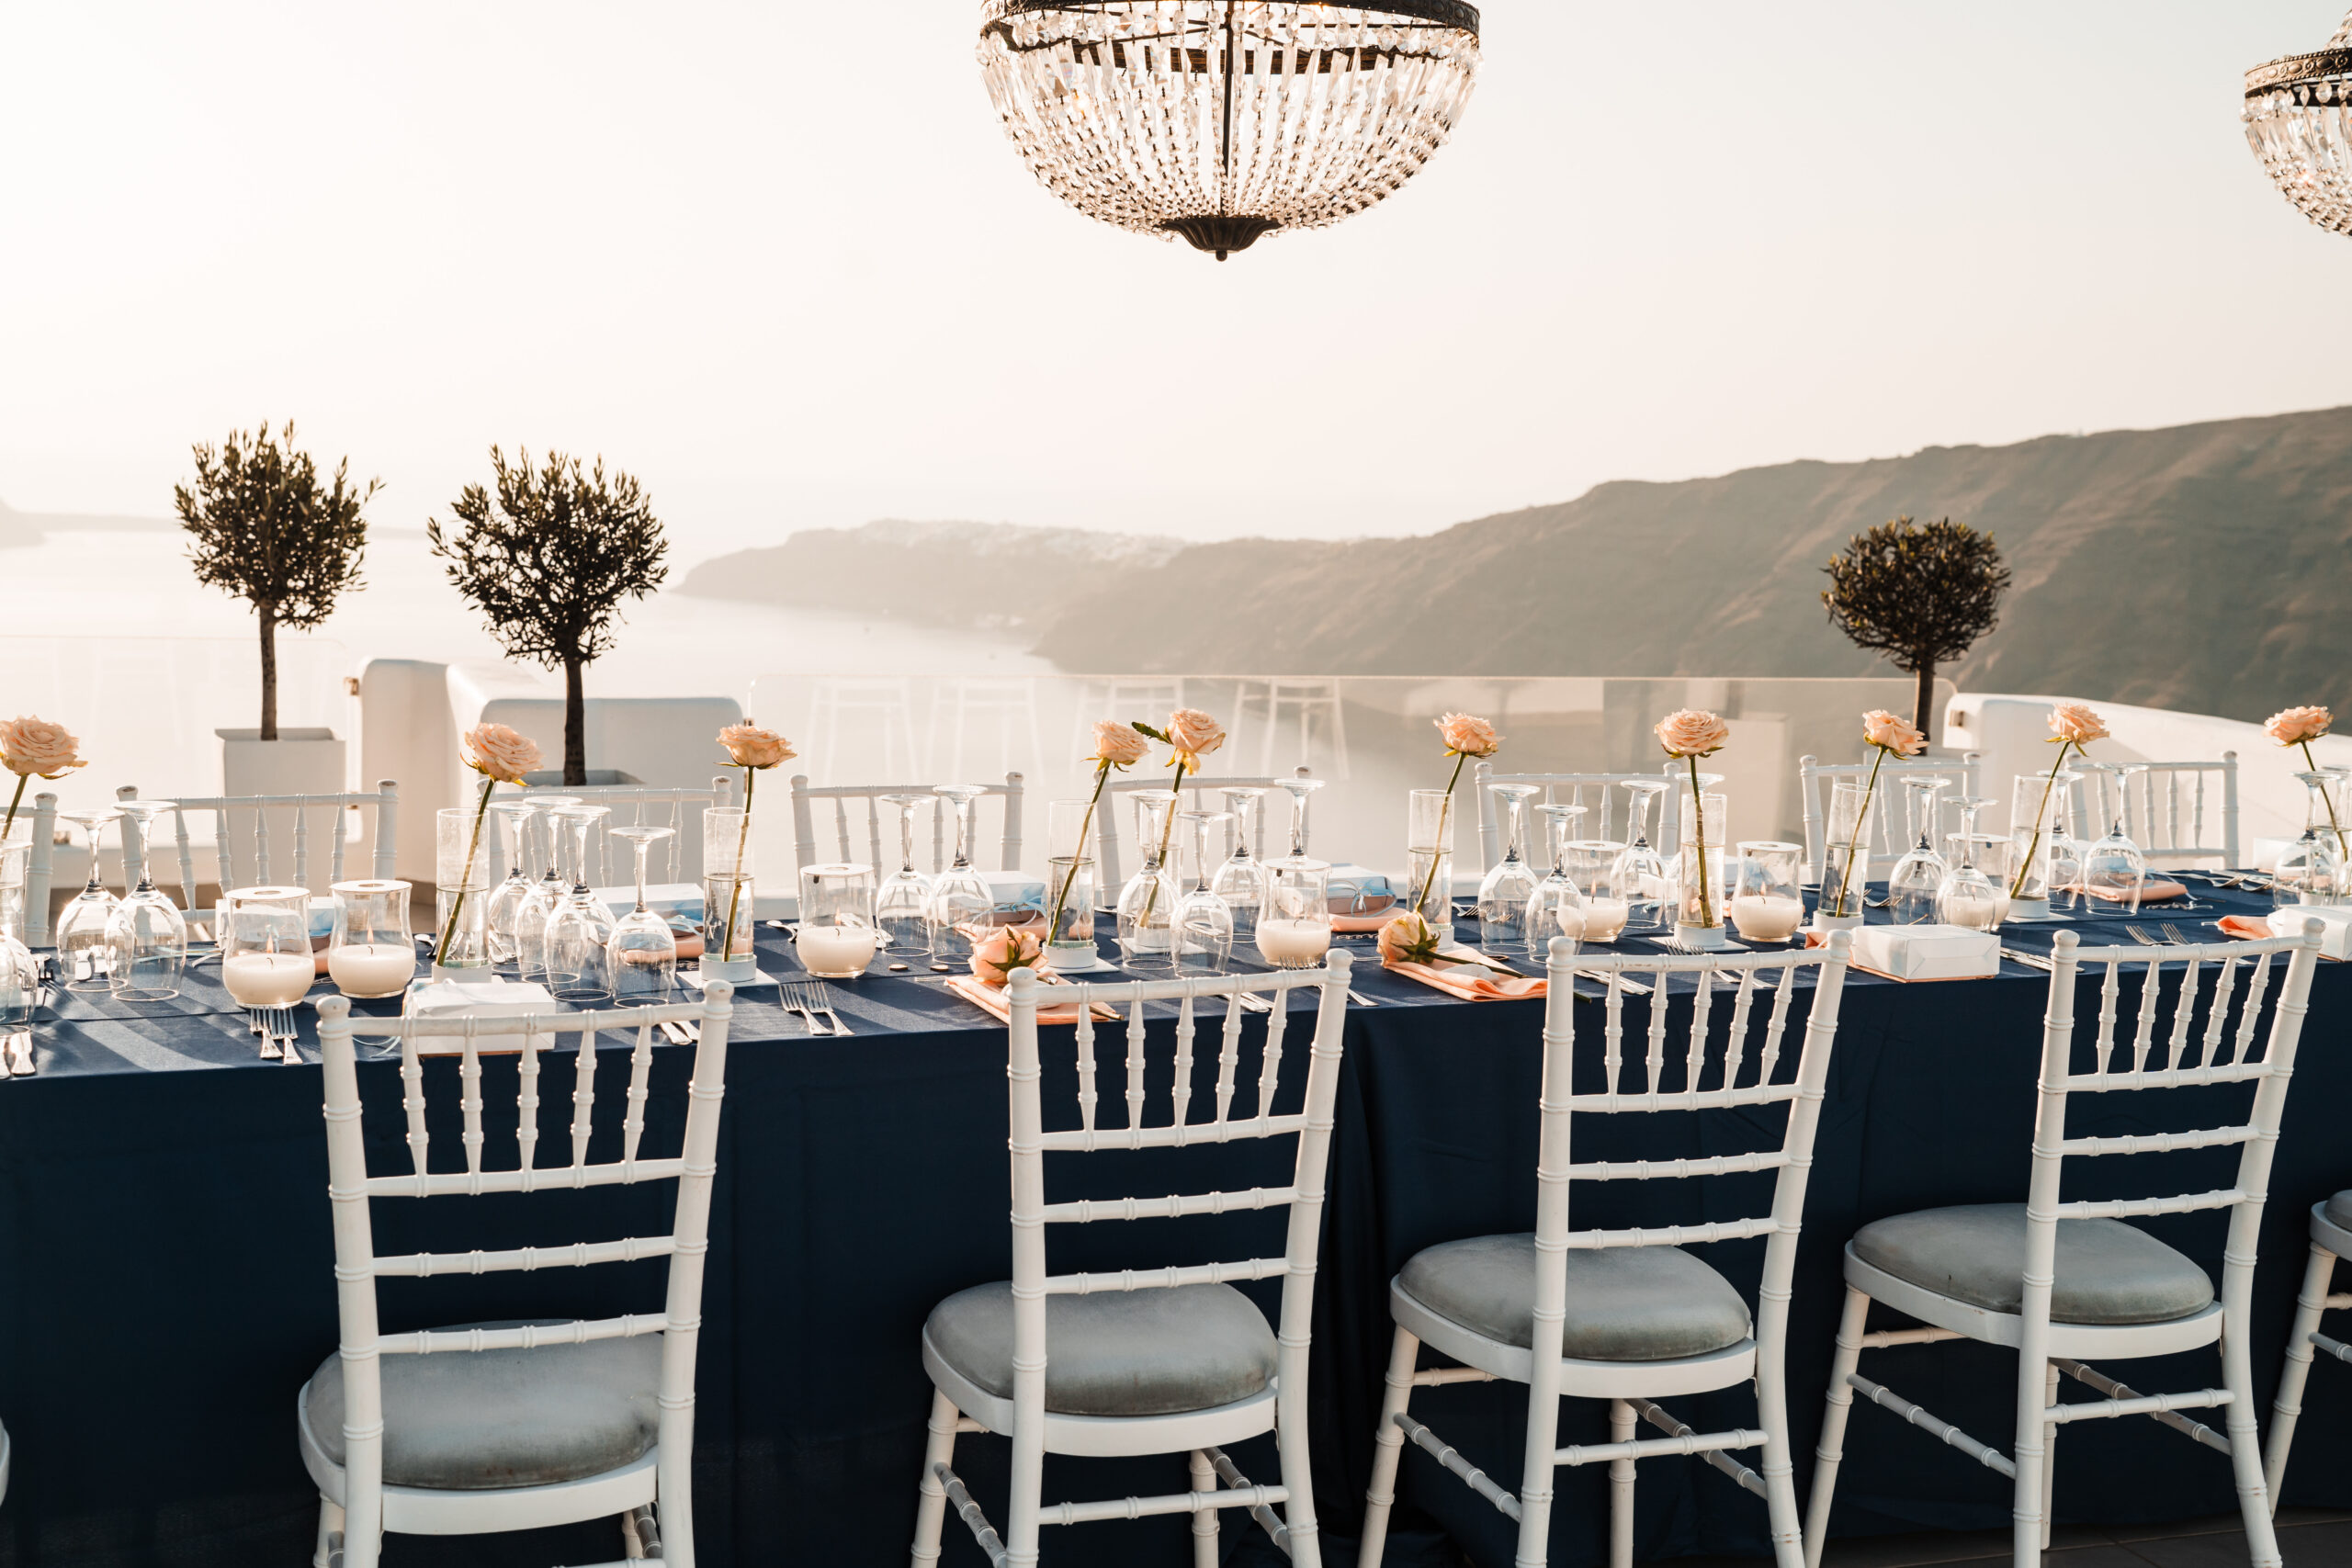 outdoor reception table set up at Le Ciel destination wedding venue in Santorini